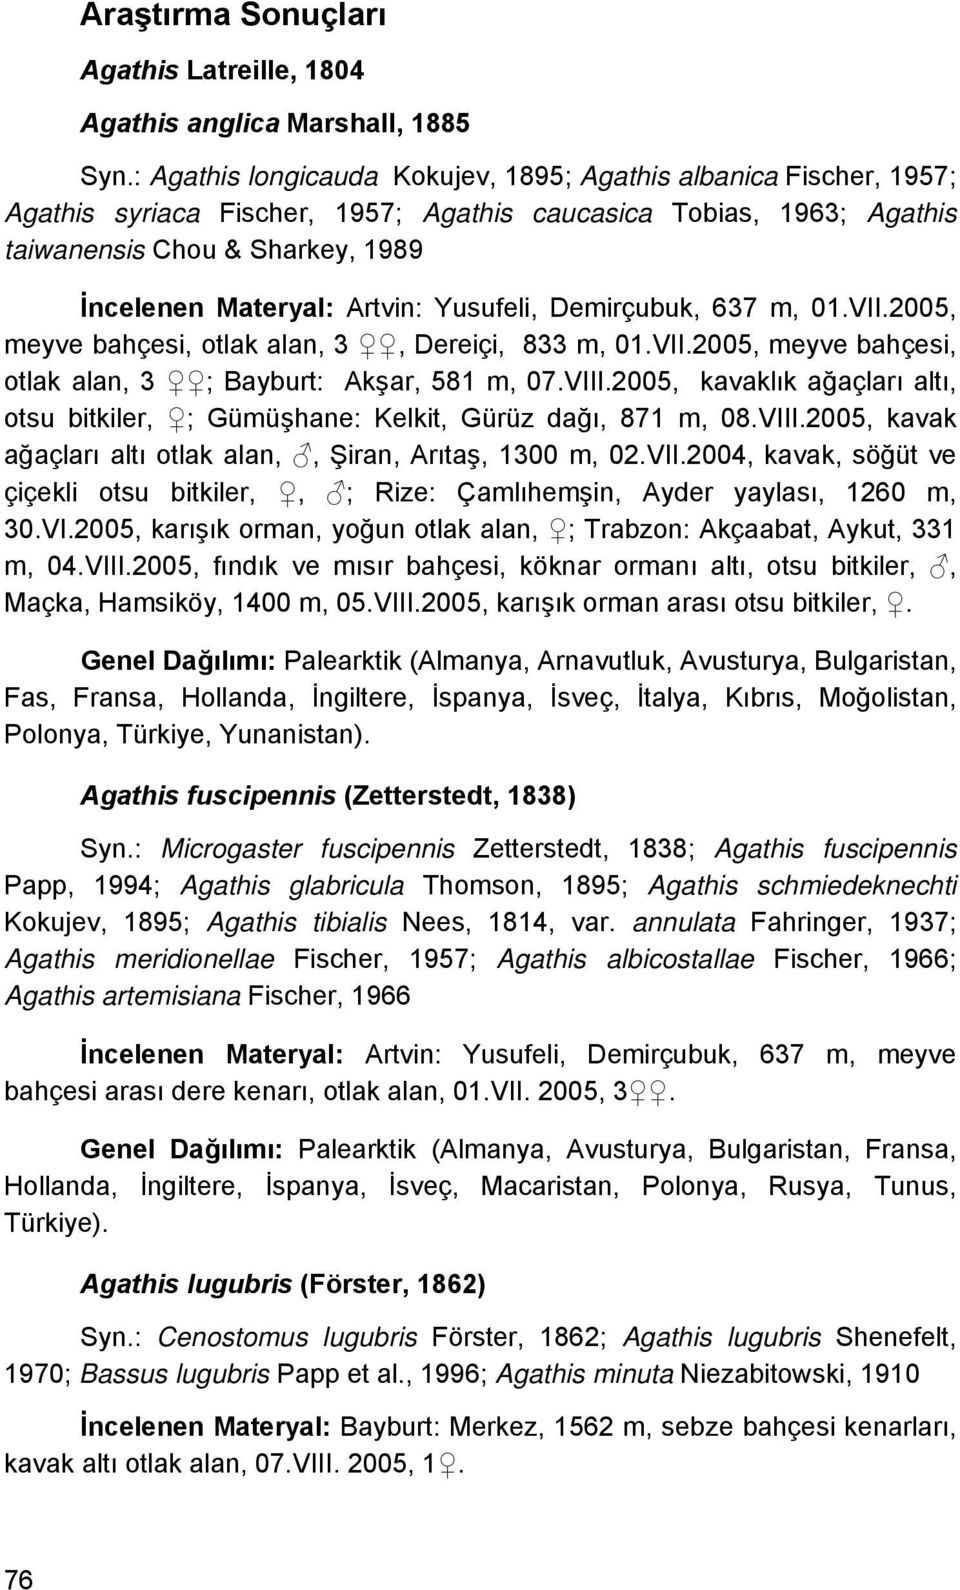 Yusufeli, Demirçubuk, 637 m, 01.VII.2005, meyve bahçesi, otlak alan, 3, Dereiçi, 833 m, 01.VII.2005, meyve bahçesi, otlak alan, 3 ; Bayburt: Akşar, 581 m, 07.VIII.